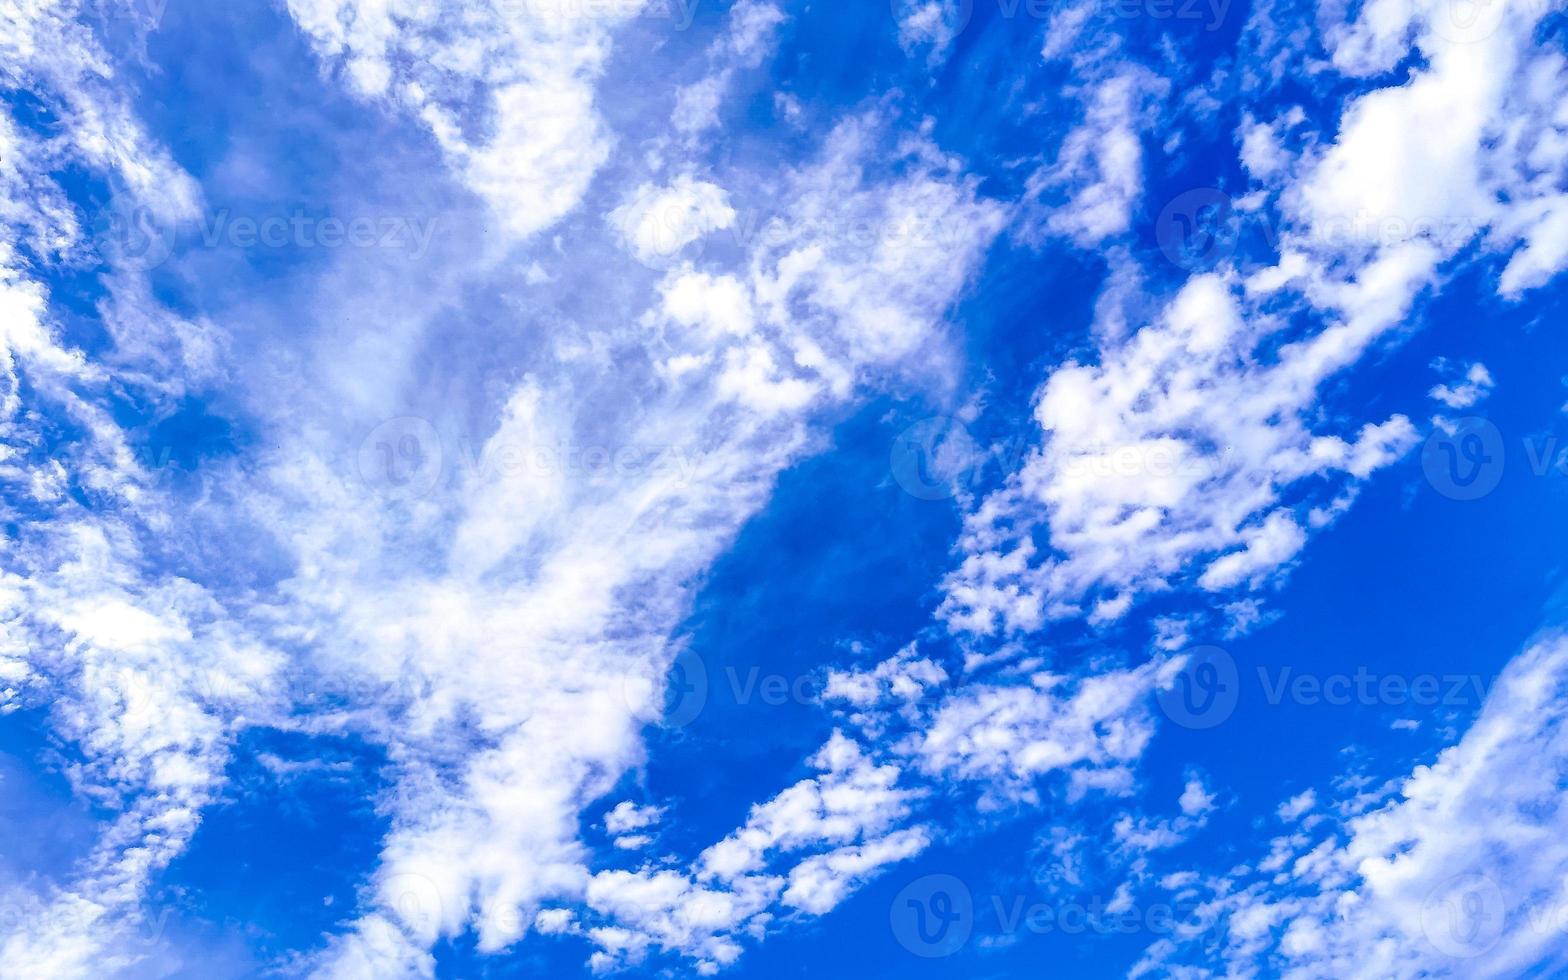 cielo azul con hermosas nubes en un día soleado en México. foto